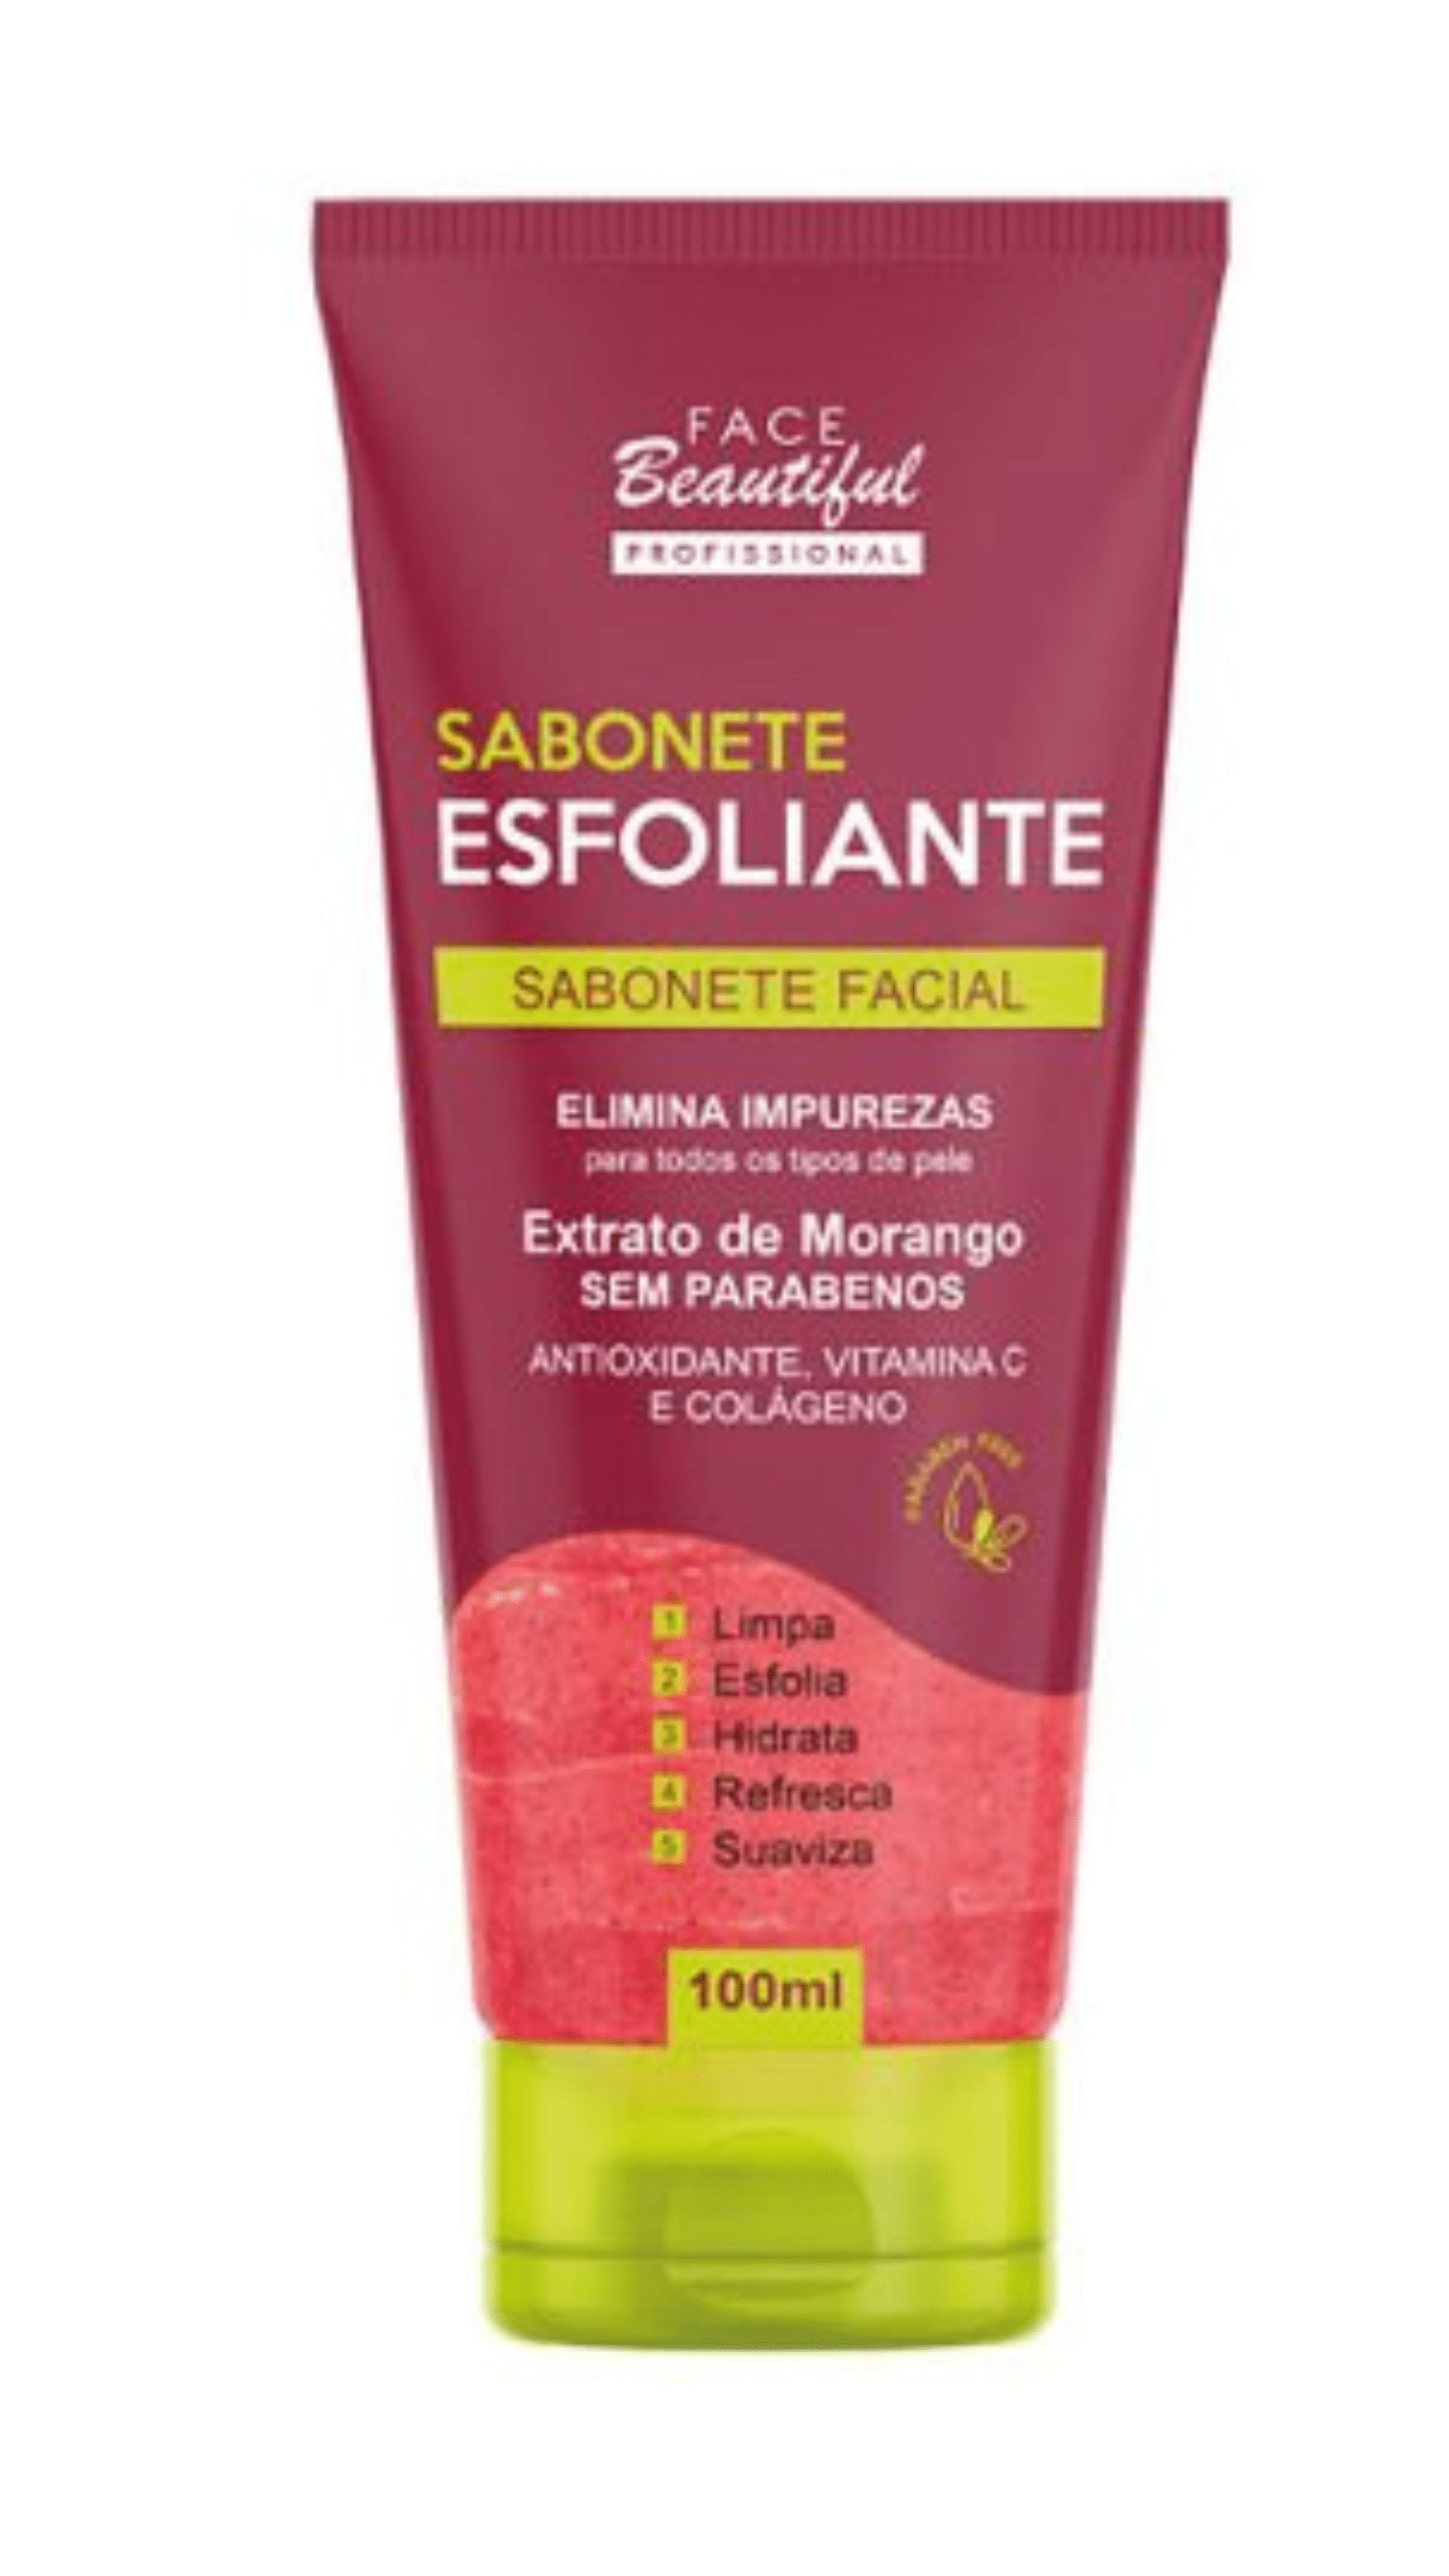 Sabonete Esfoliante Facial Extrato de Morango -  Face Beautiful